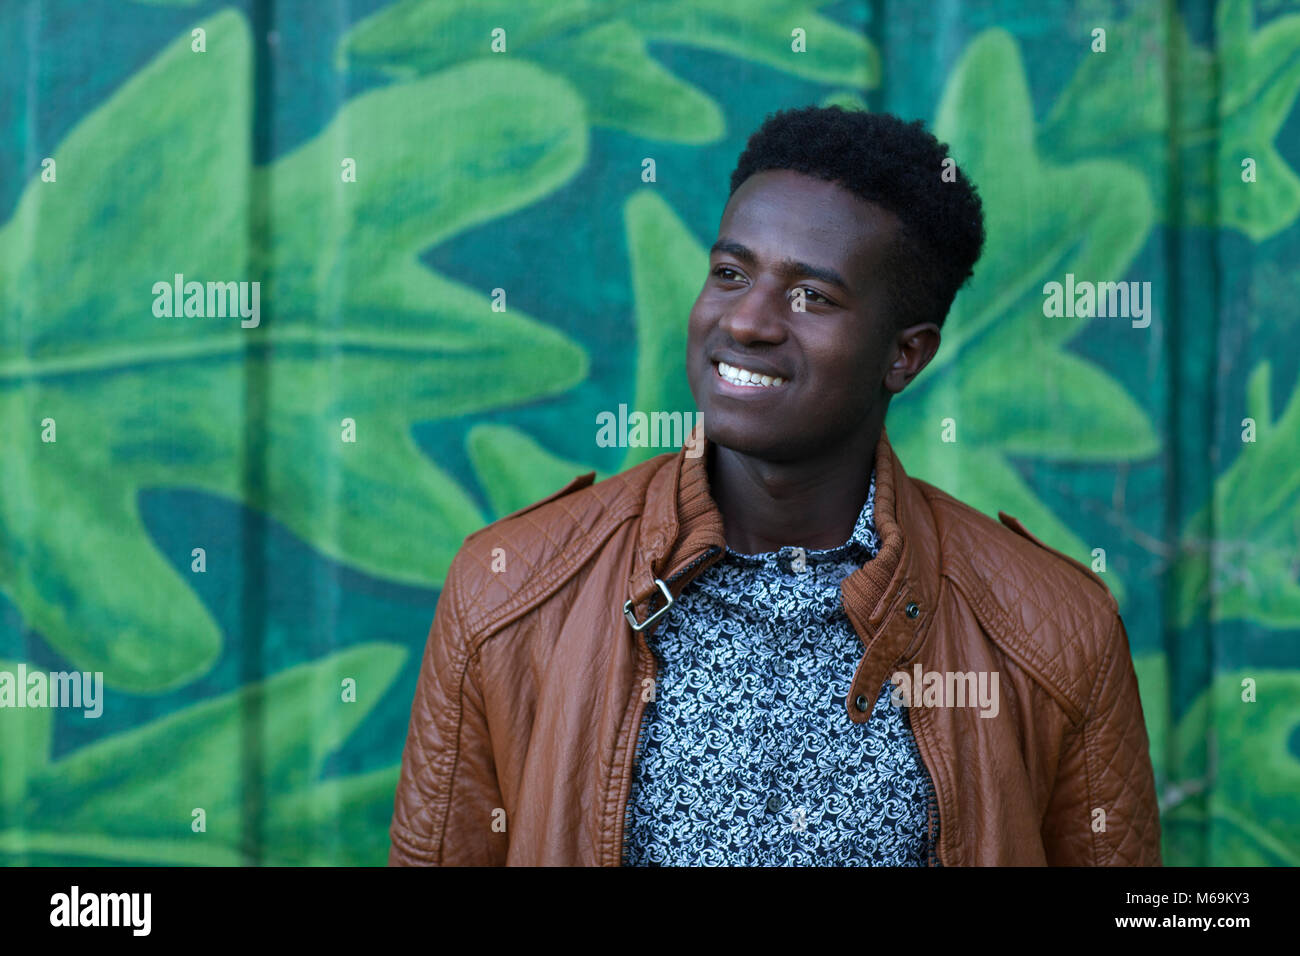 Bel giovane uomo nero sorrisi nella parte anteriore della parete dipinta con foglie Foto Stock